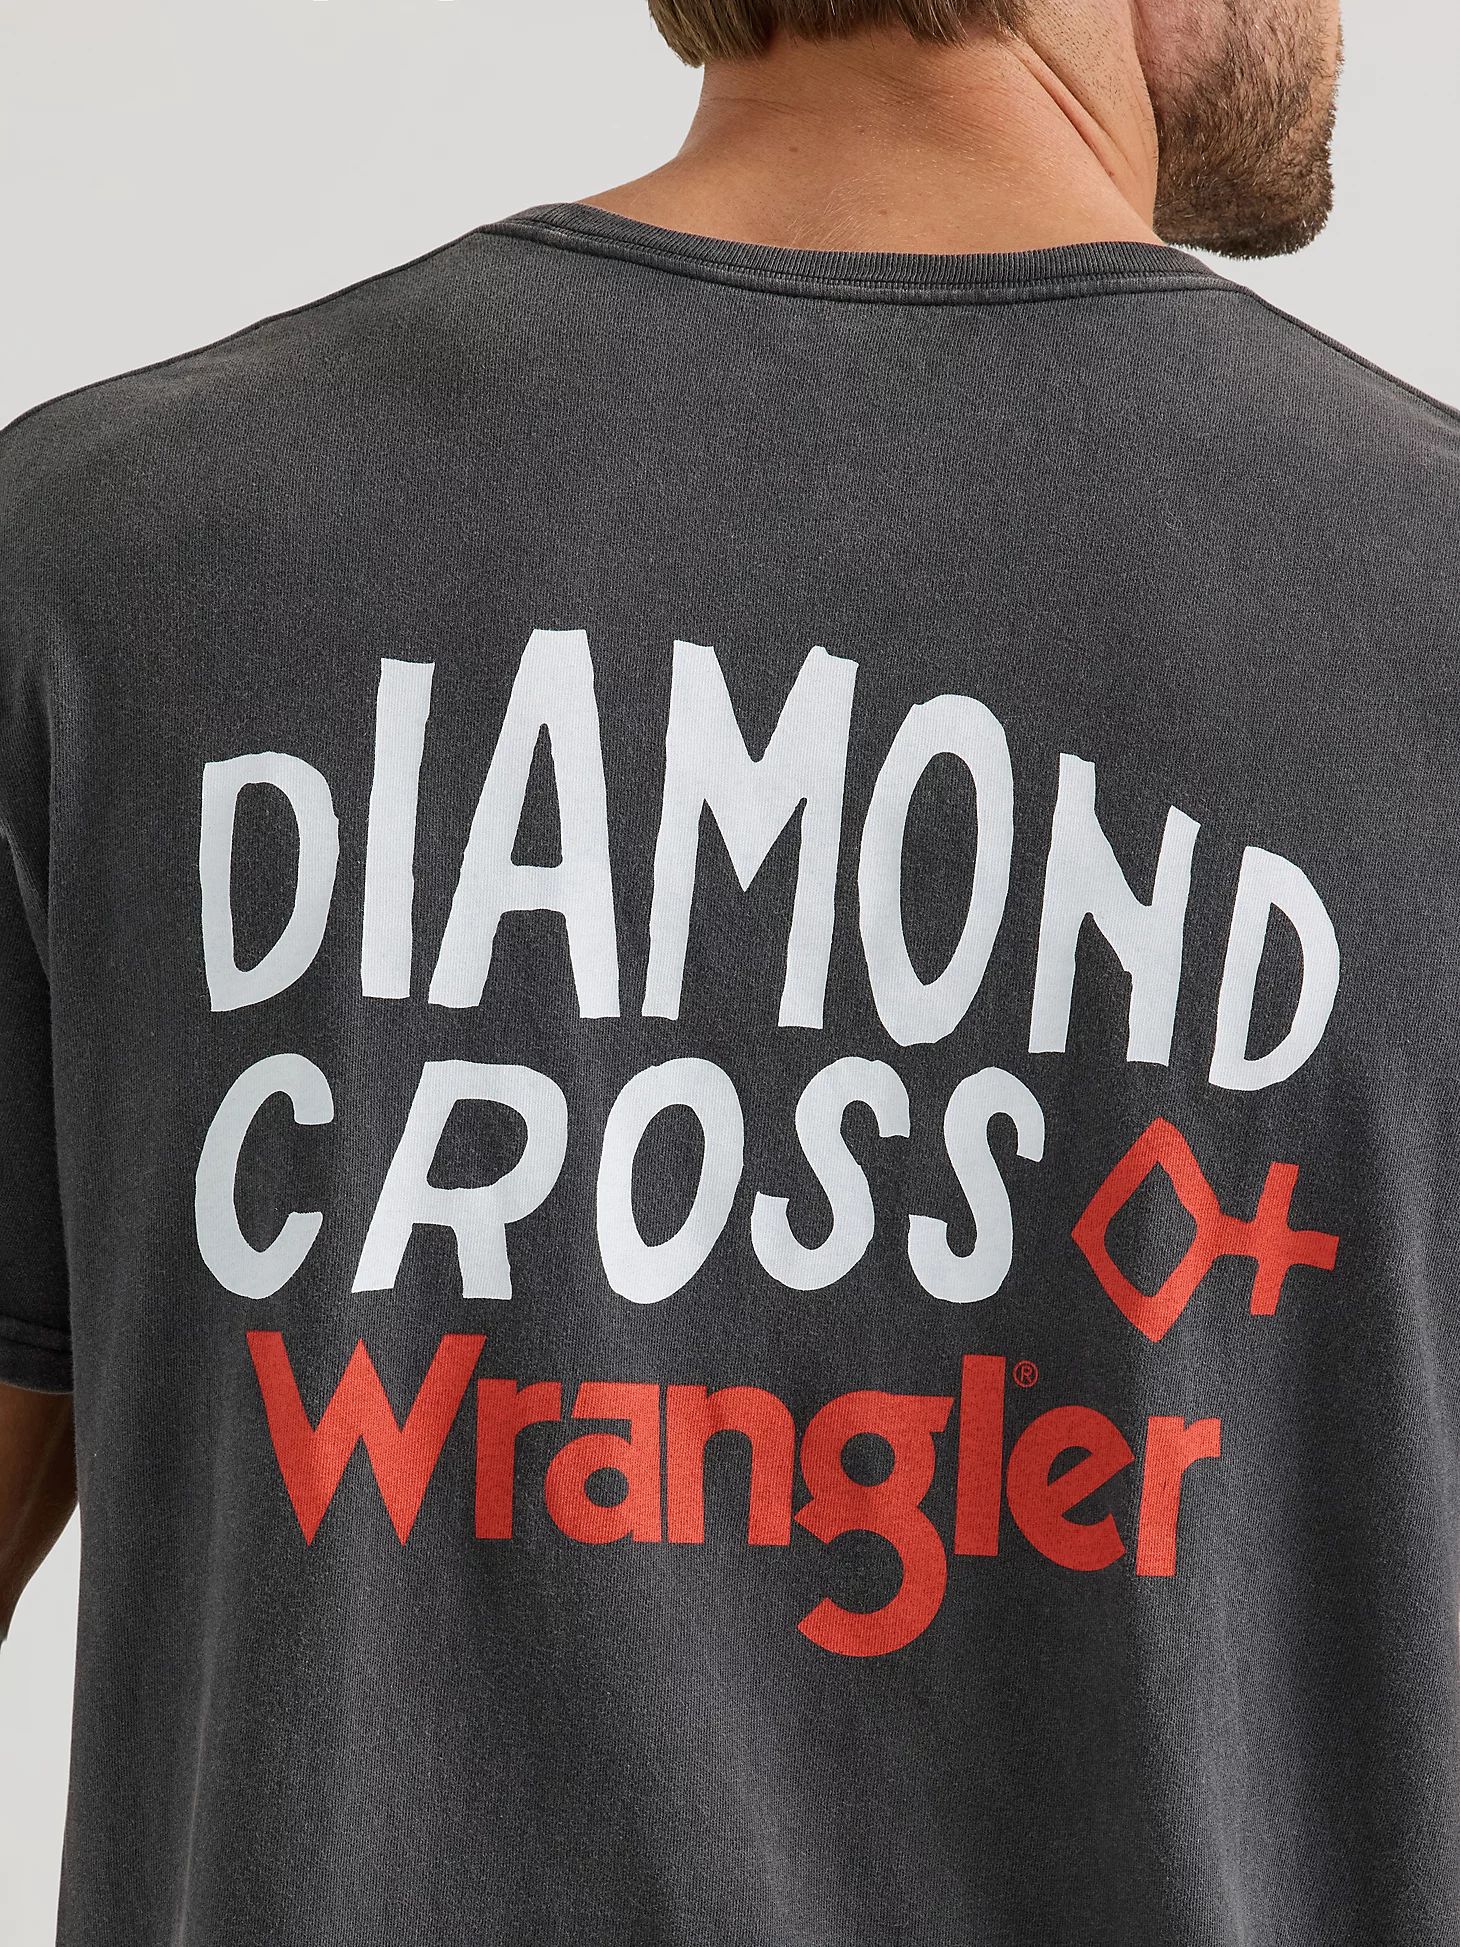 Wrangler x Diamond Cross Giddy Up Tee in Jet Black | Wrangler